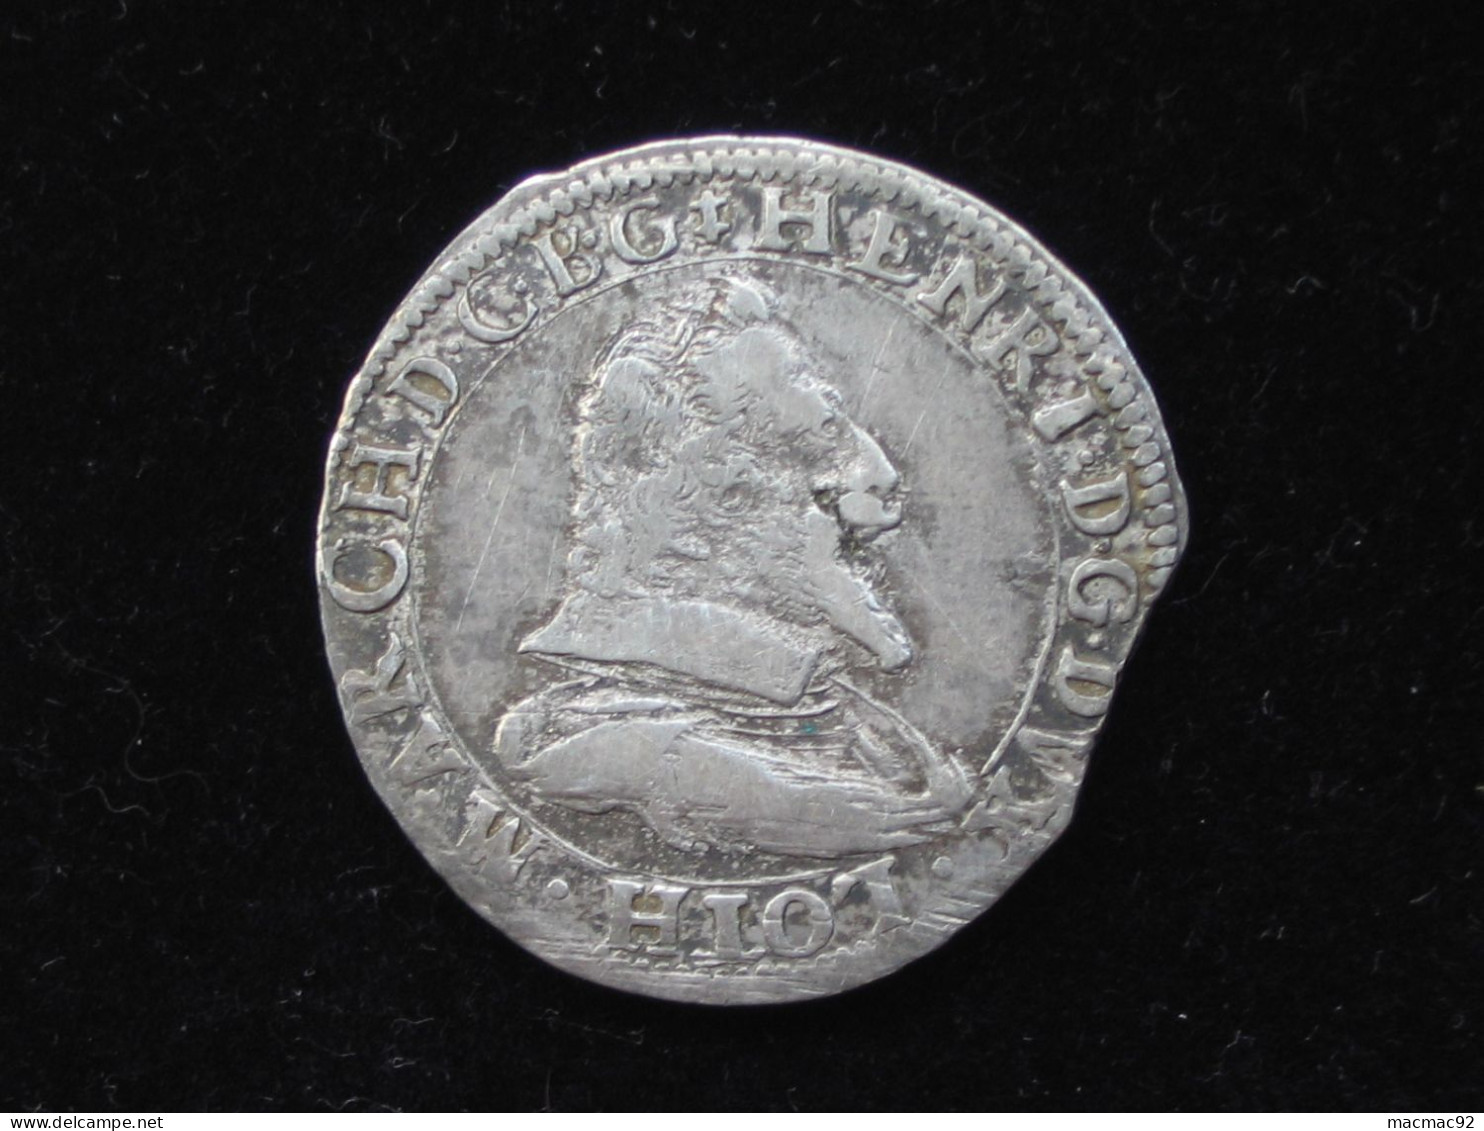 HENRI II - TESTON D'HENRI II - Monnaie De Lorraine, Duché De Lorraine  **** EN ACHAT IMMEDIAT **** - 1547-1559 Heinrich II.